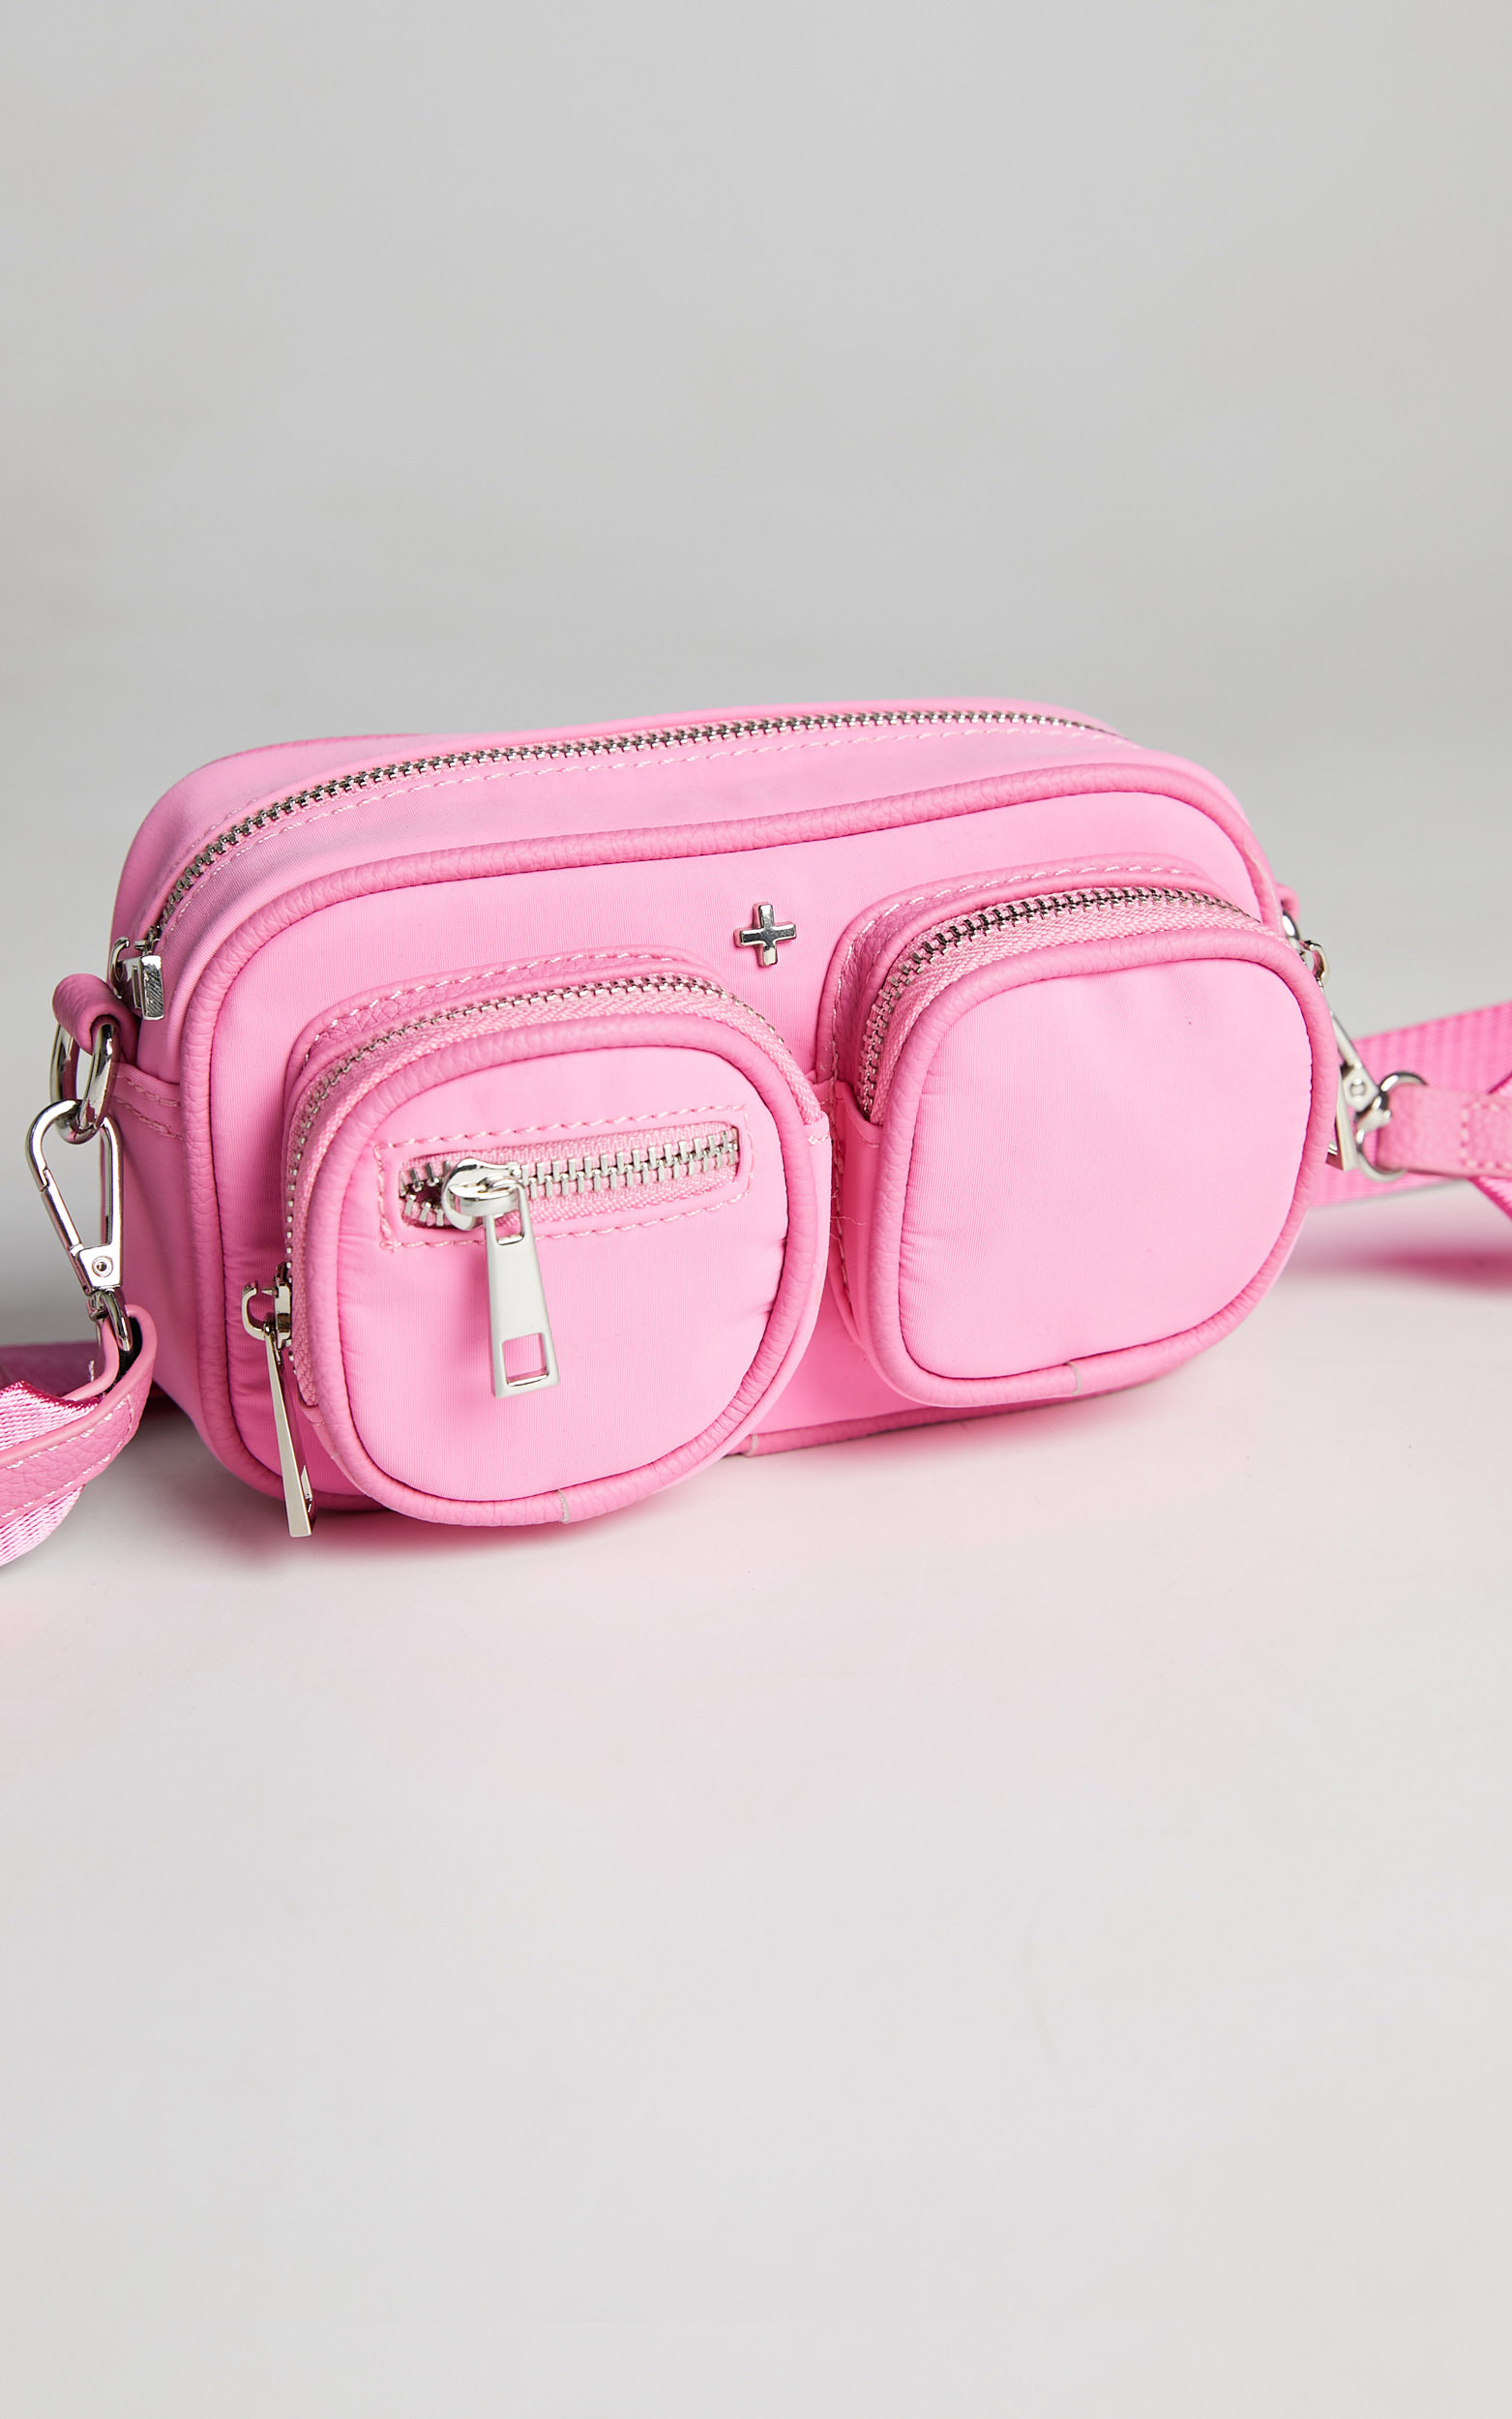 Peta And Jain - Lala Bag in Pink nylon | Showpo